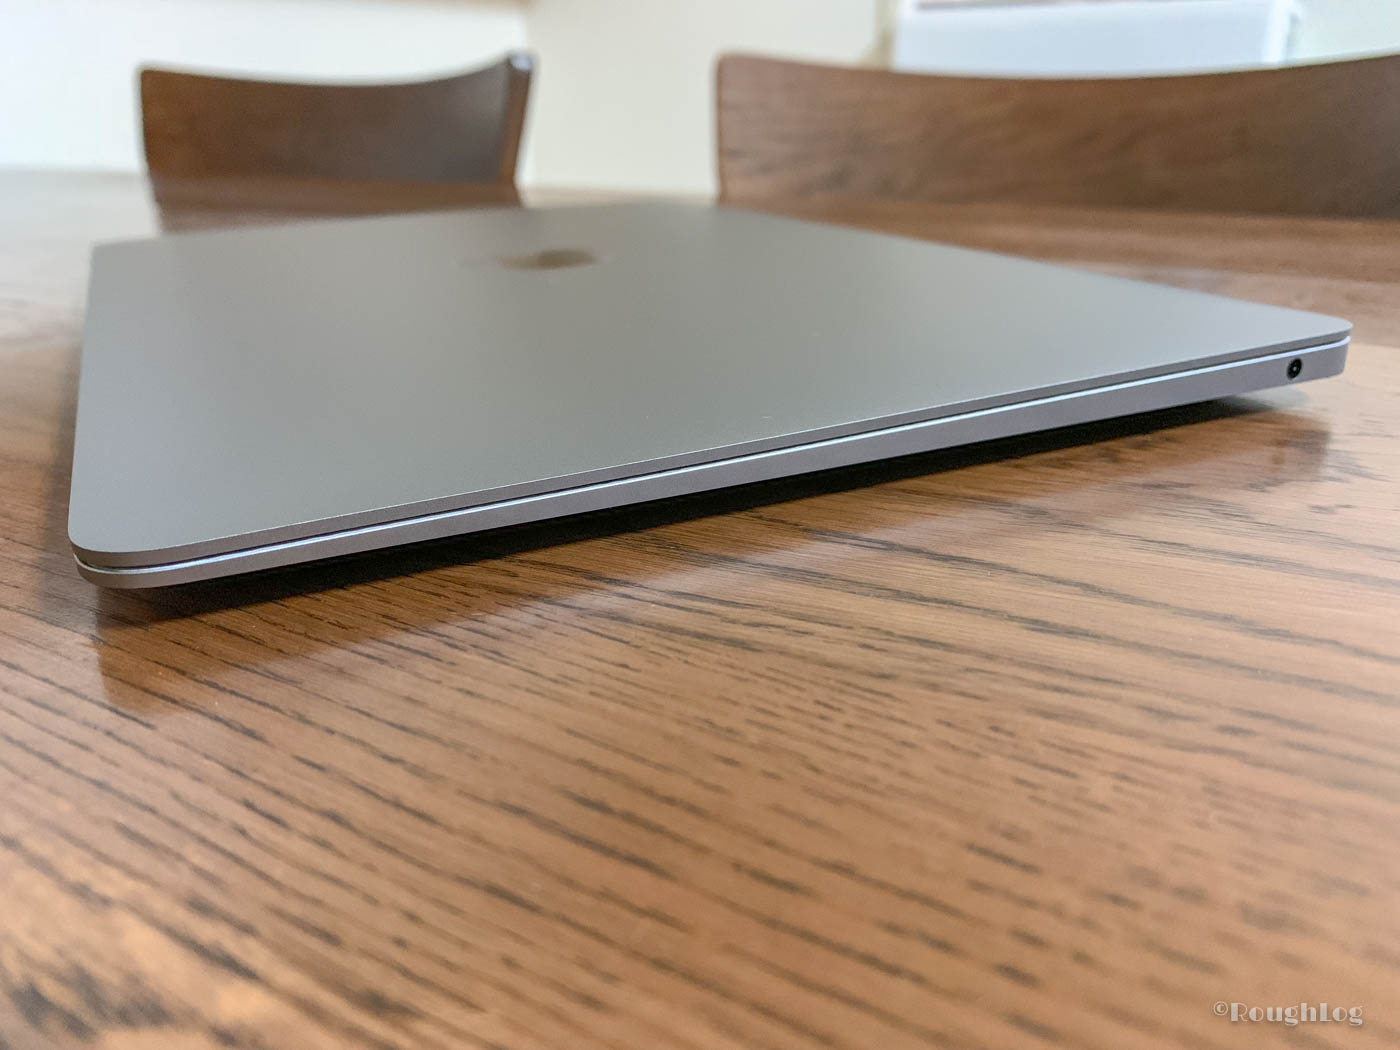 MacBook Air 2018の右サイドには3.5mmヘッドホン端子